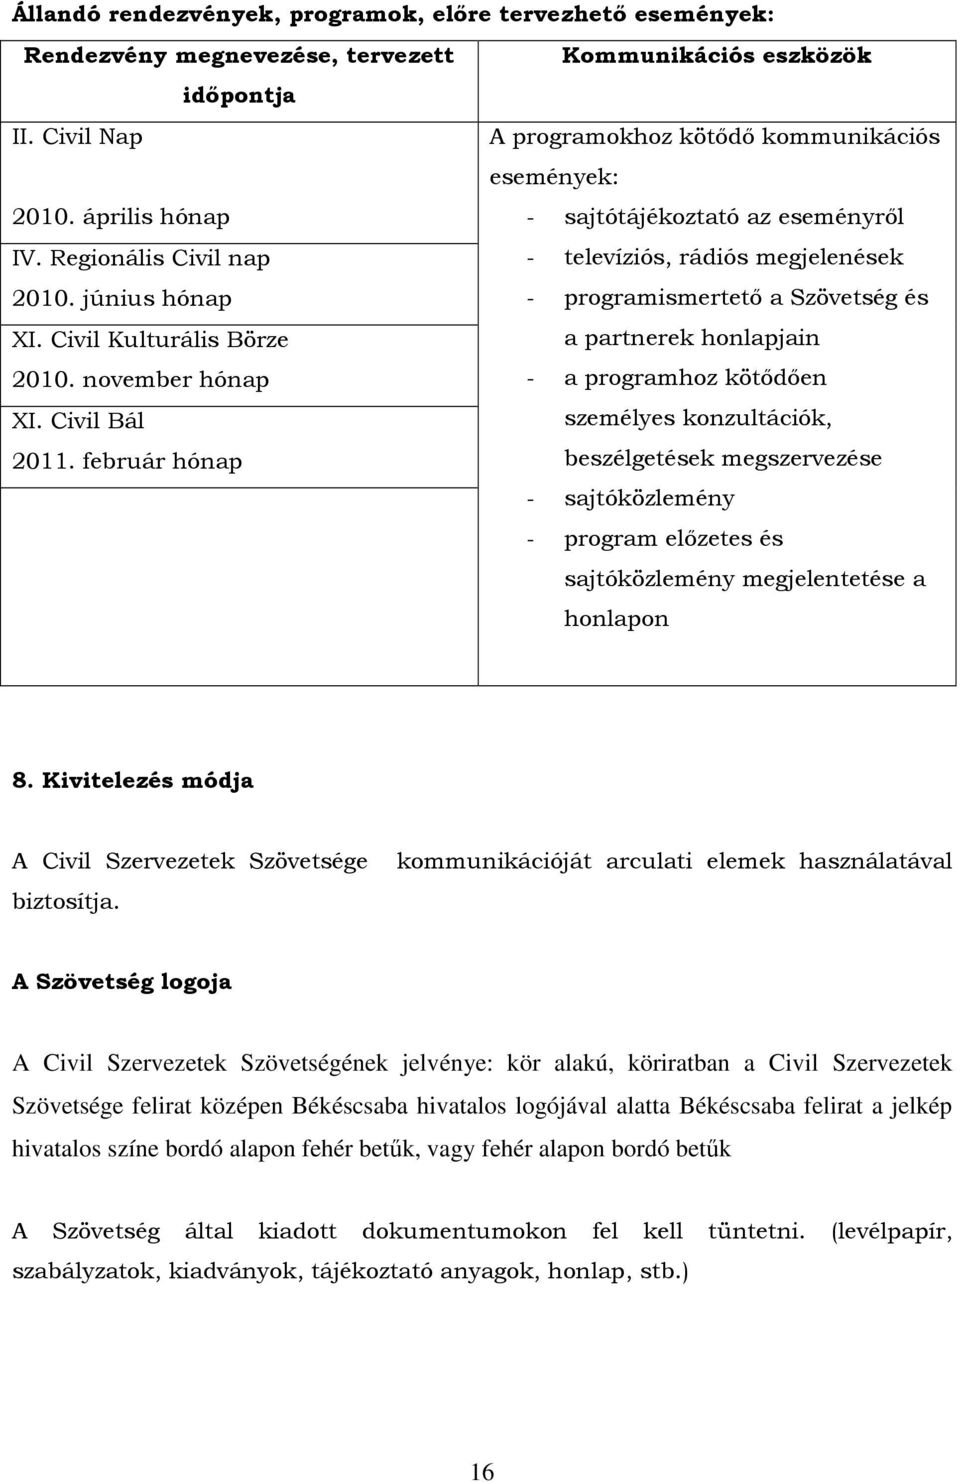 Civil Kulturális Börze - programismertetı a Szövetség és a partnerek honlapjain 2010. november hónap XI. Civil Bál 2011.